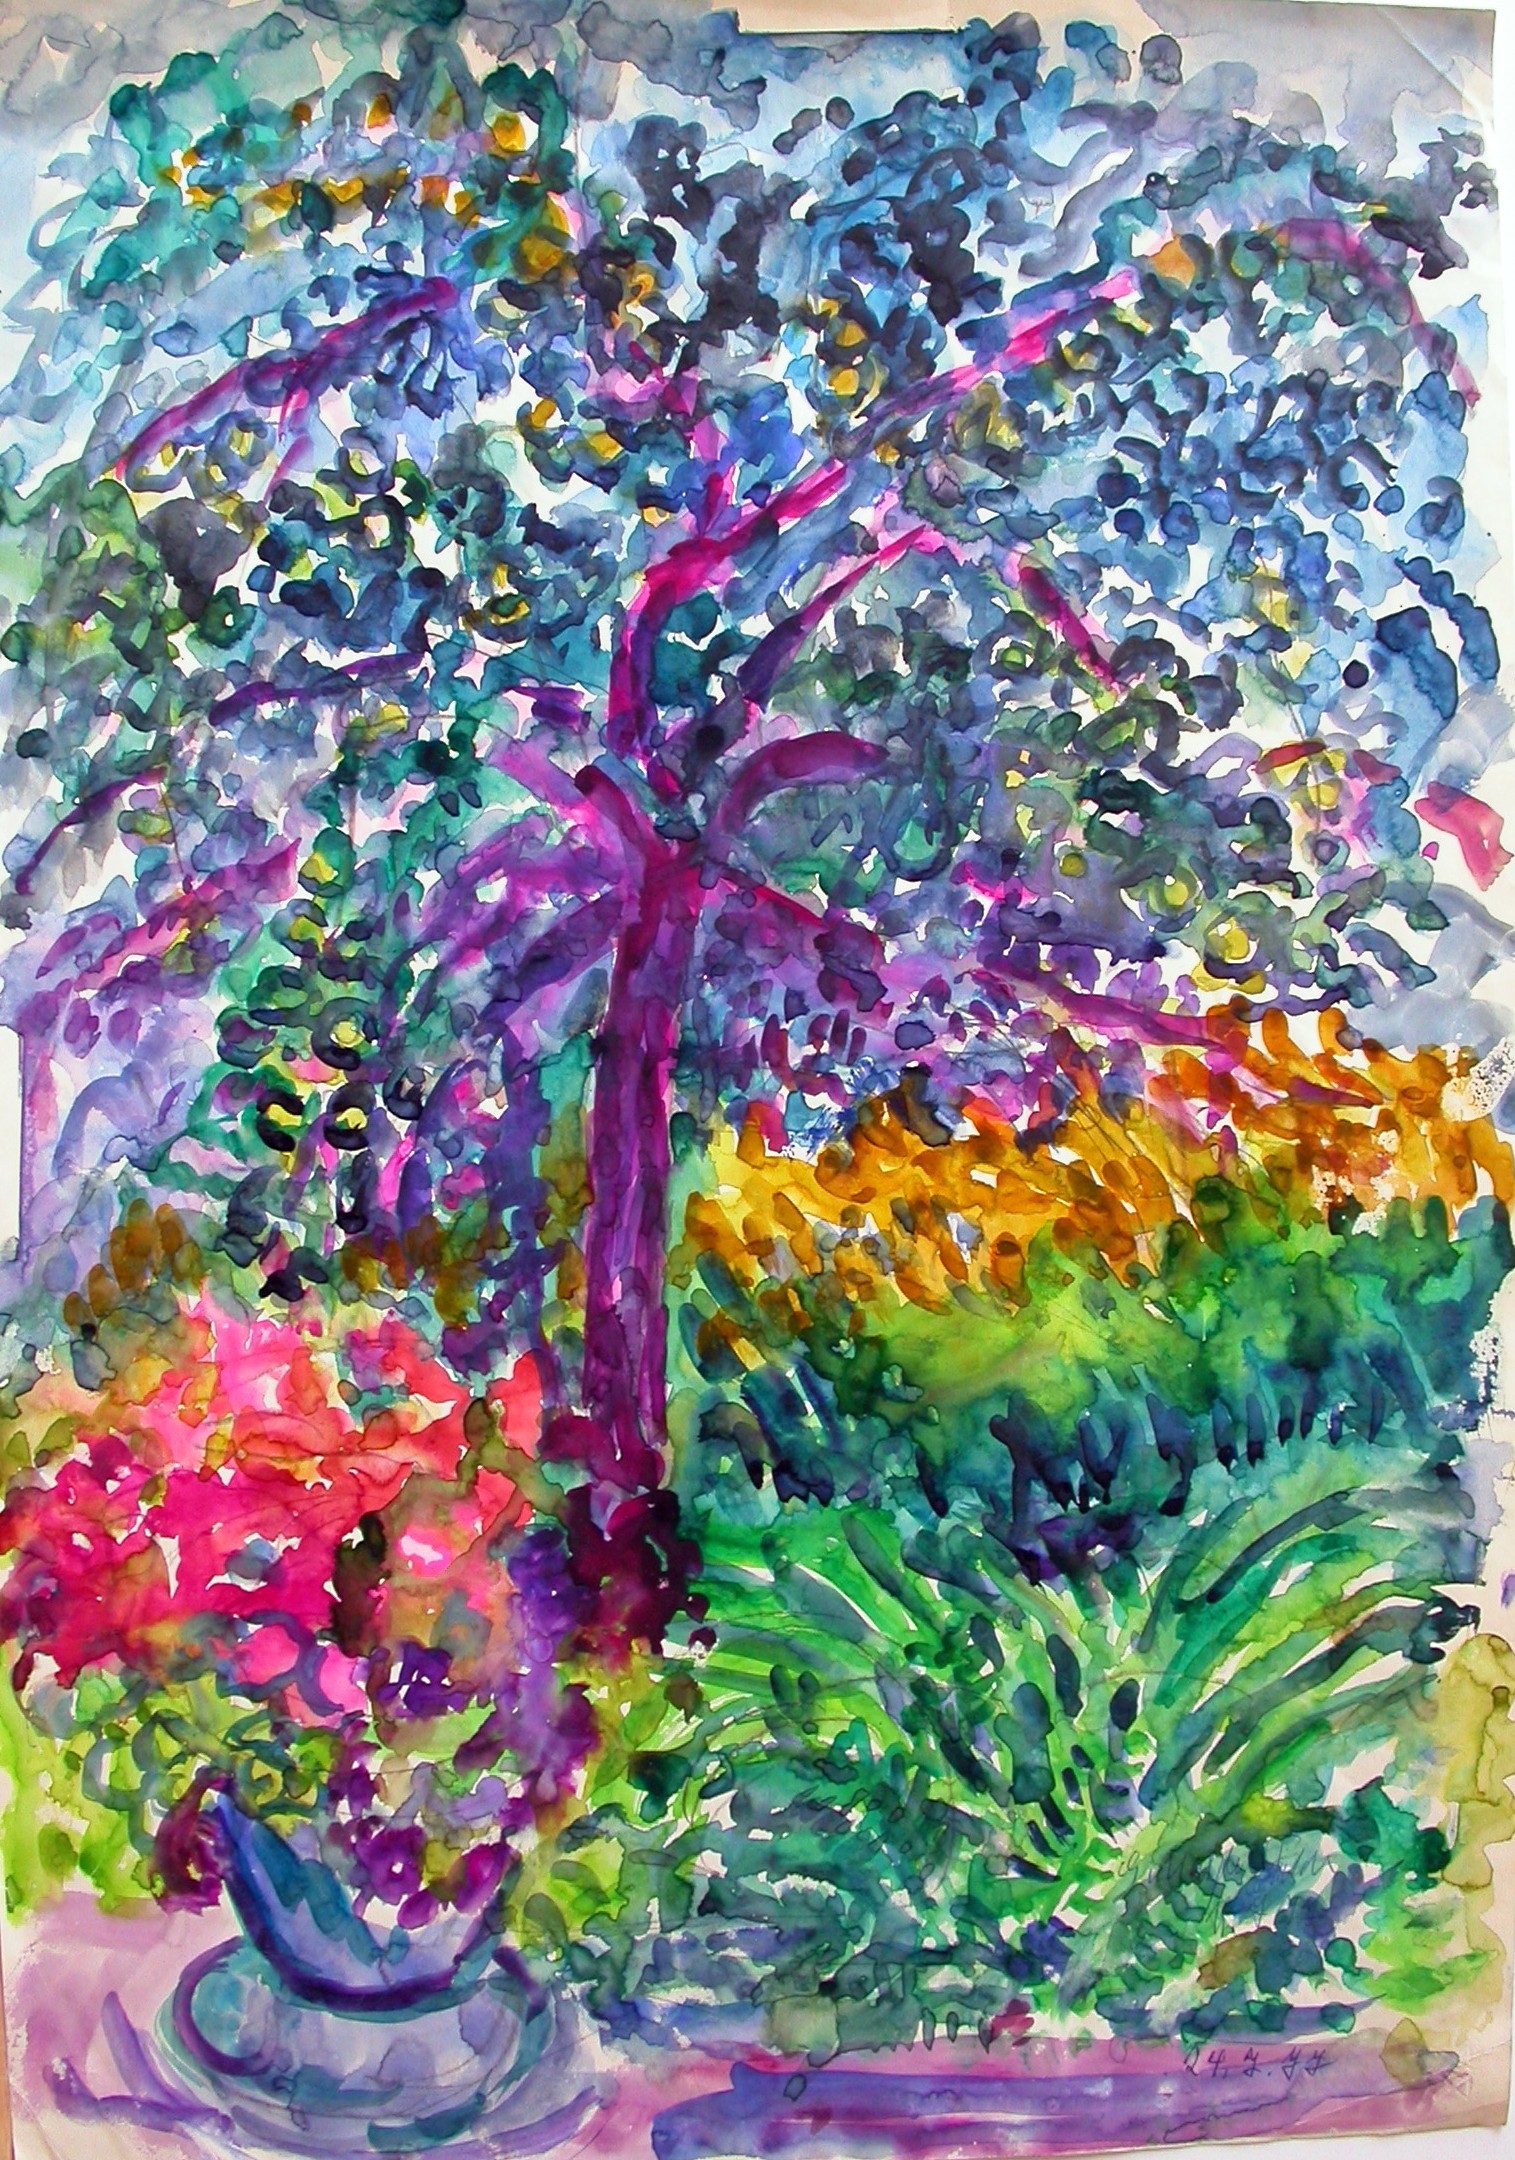 Matejka-Felden (1901 - 1985) " Blühender Baum"